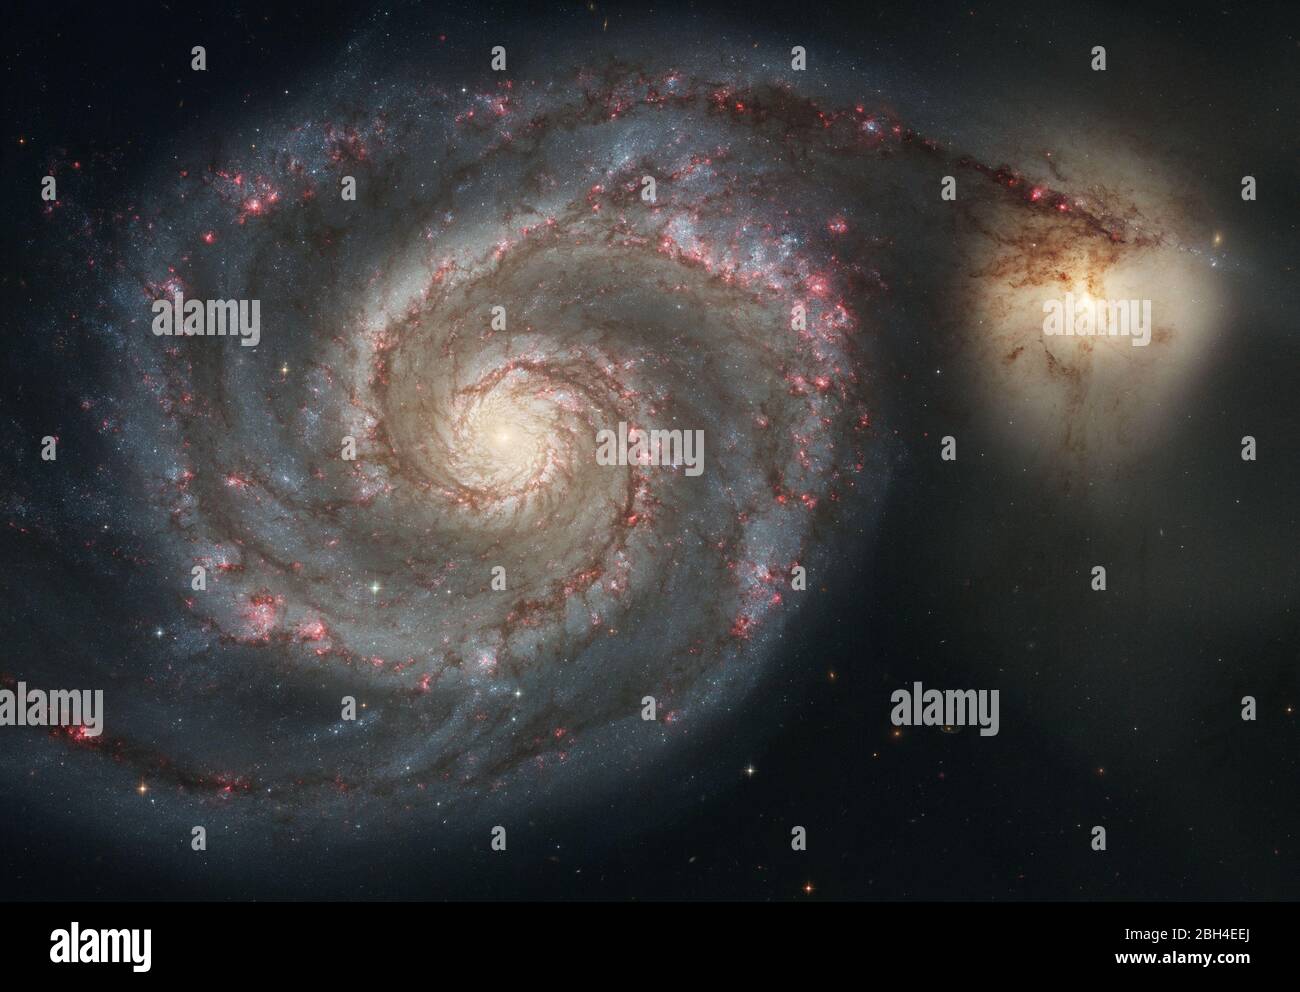 Tomada en enero de 2005 con la cámara avanzada para estudios (ACS) del Telescopio Espacial Hubble ilustra el gran diseño de la galaxia espiral M51 (NGC 5194), desde sus brazos espirales en curva, donde residen las estrellas jóvenes, hasta su núcleo central amarillento, hogar de estrellas más antiguas. La galaxia es apodada el Whirlpool debido a su estructura de remolinos. La característica más llamativa del Whirlpool son sus dos brazos curviantes, un sello distintivo de las llamadas galaxias espirales de diseño grandioso. Foto de stock